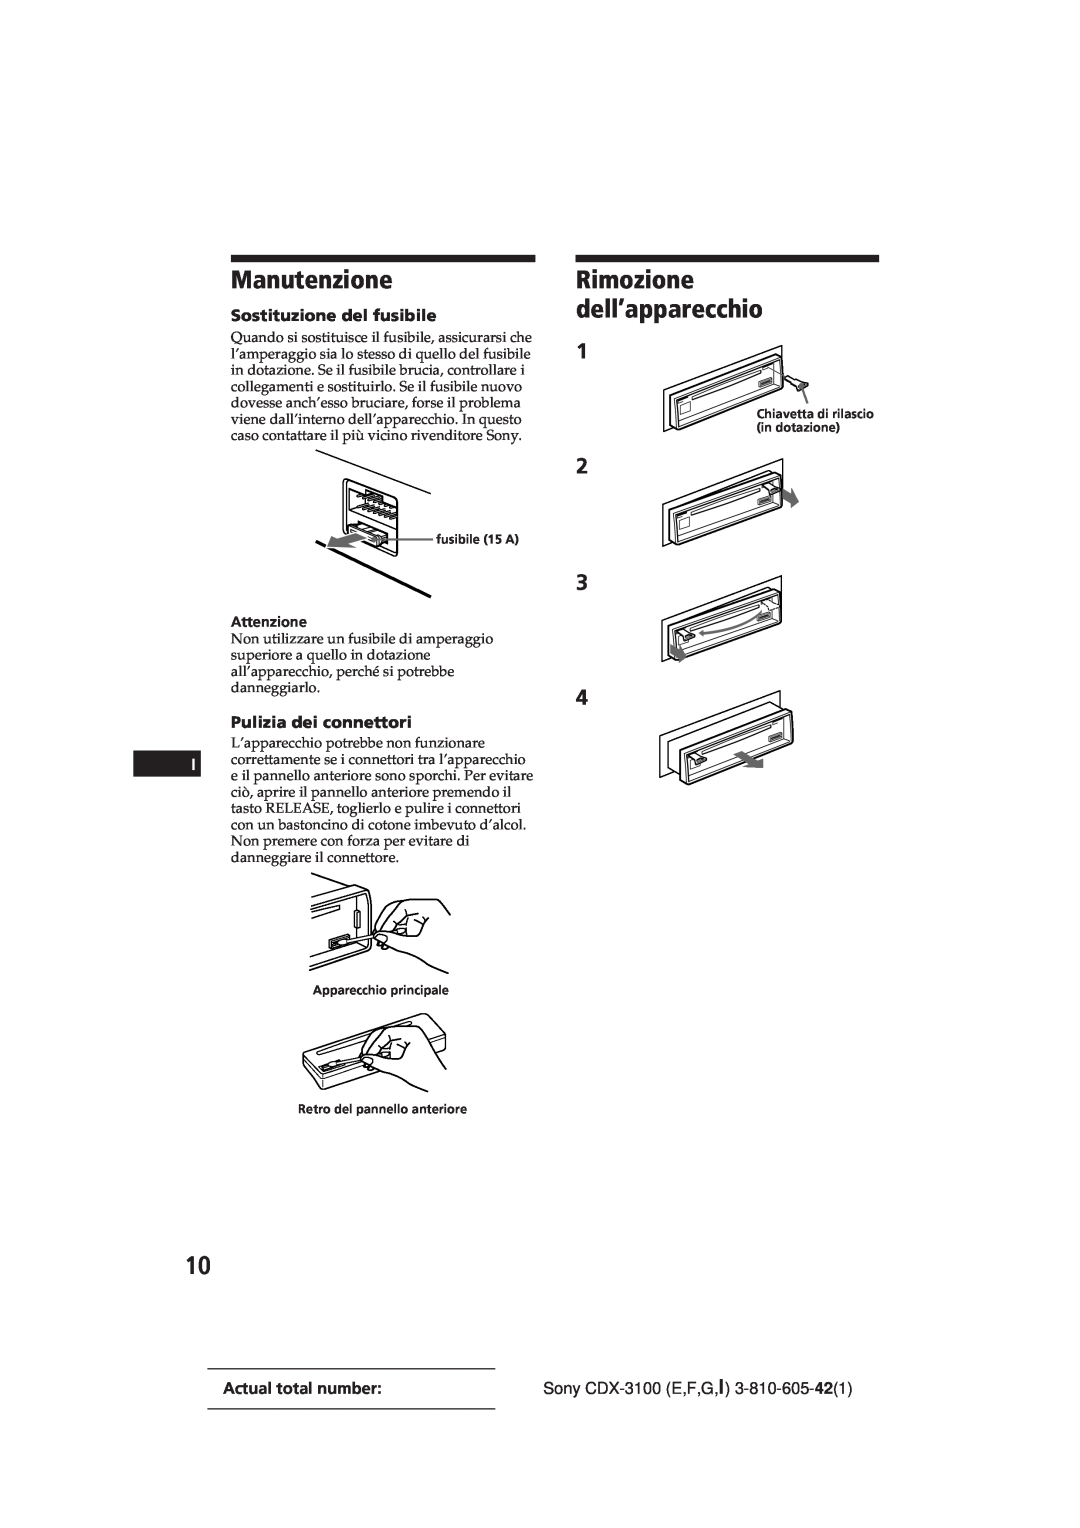 Sony CDX-3100 manual Manutenzione, Rimozione dell’apparecchio, Sostituzione del fusibile, Pulizia dei connettori 